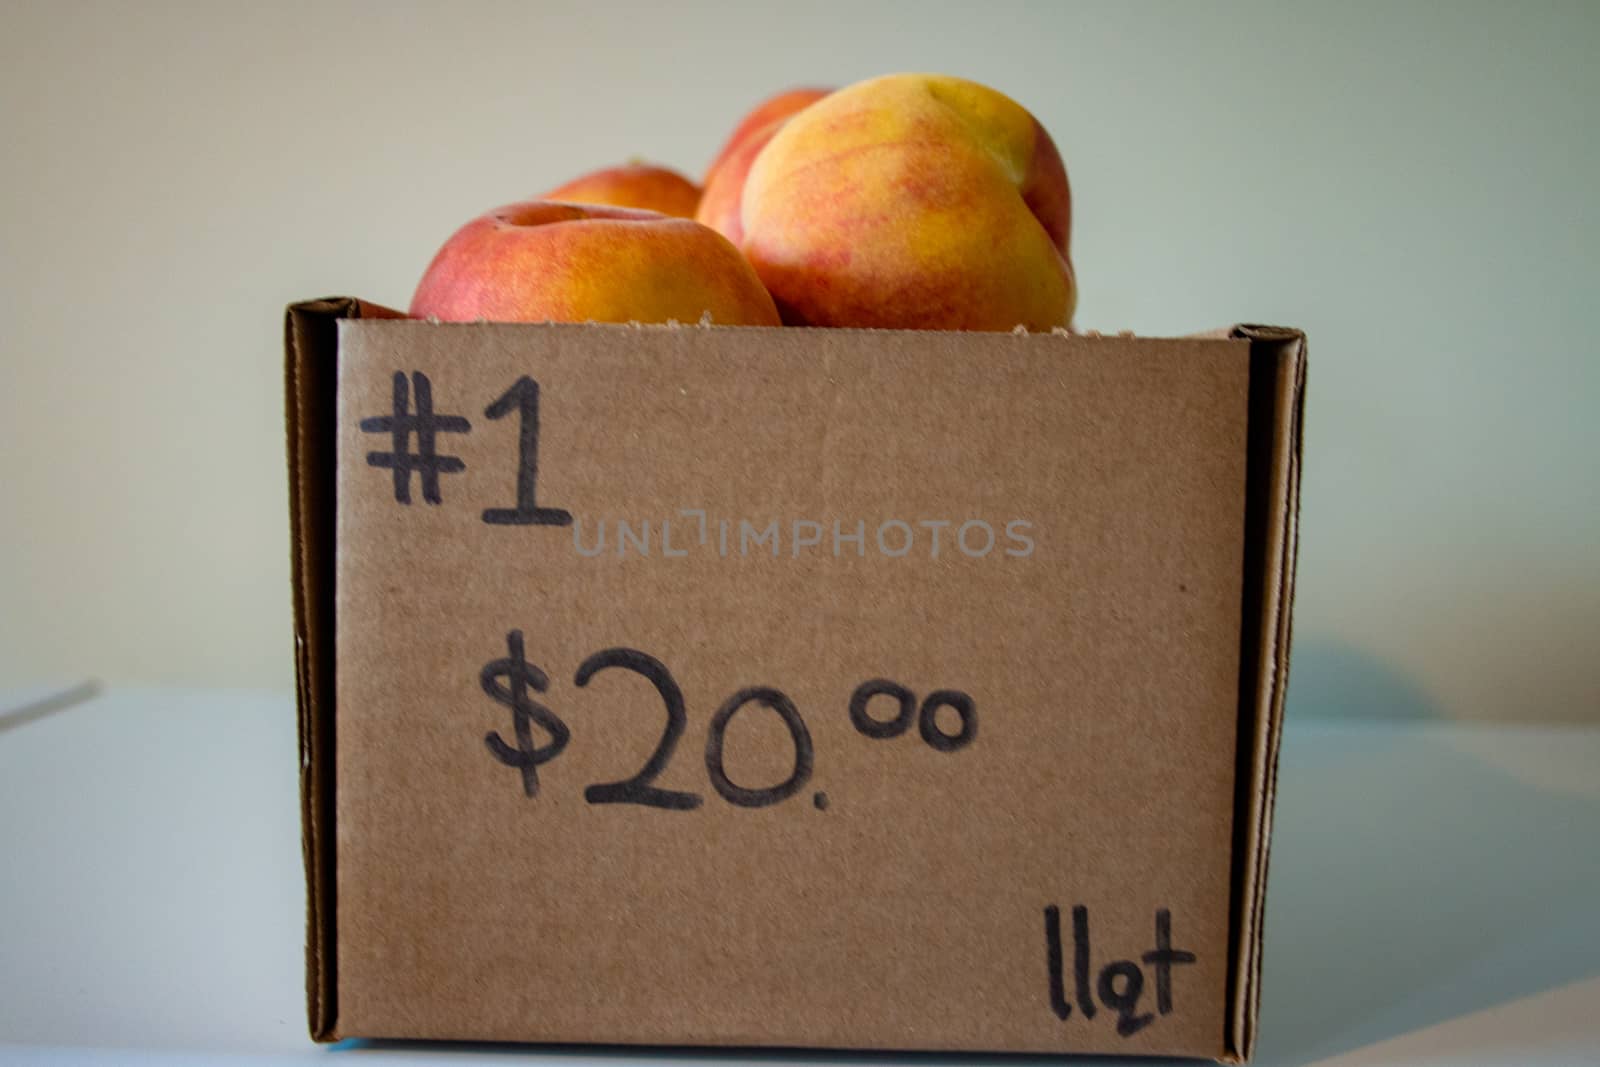 Fresh Organic Peaches Heap Of Fresh Ripe Peaches. 11 quart box of peaches that was 20 dollars by mynewturtle1